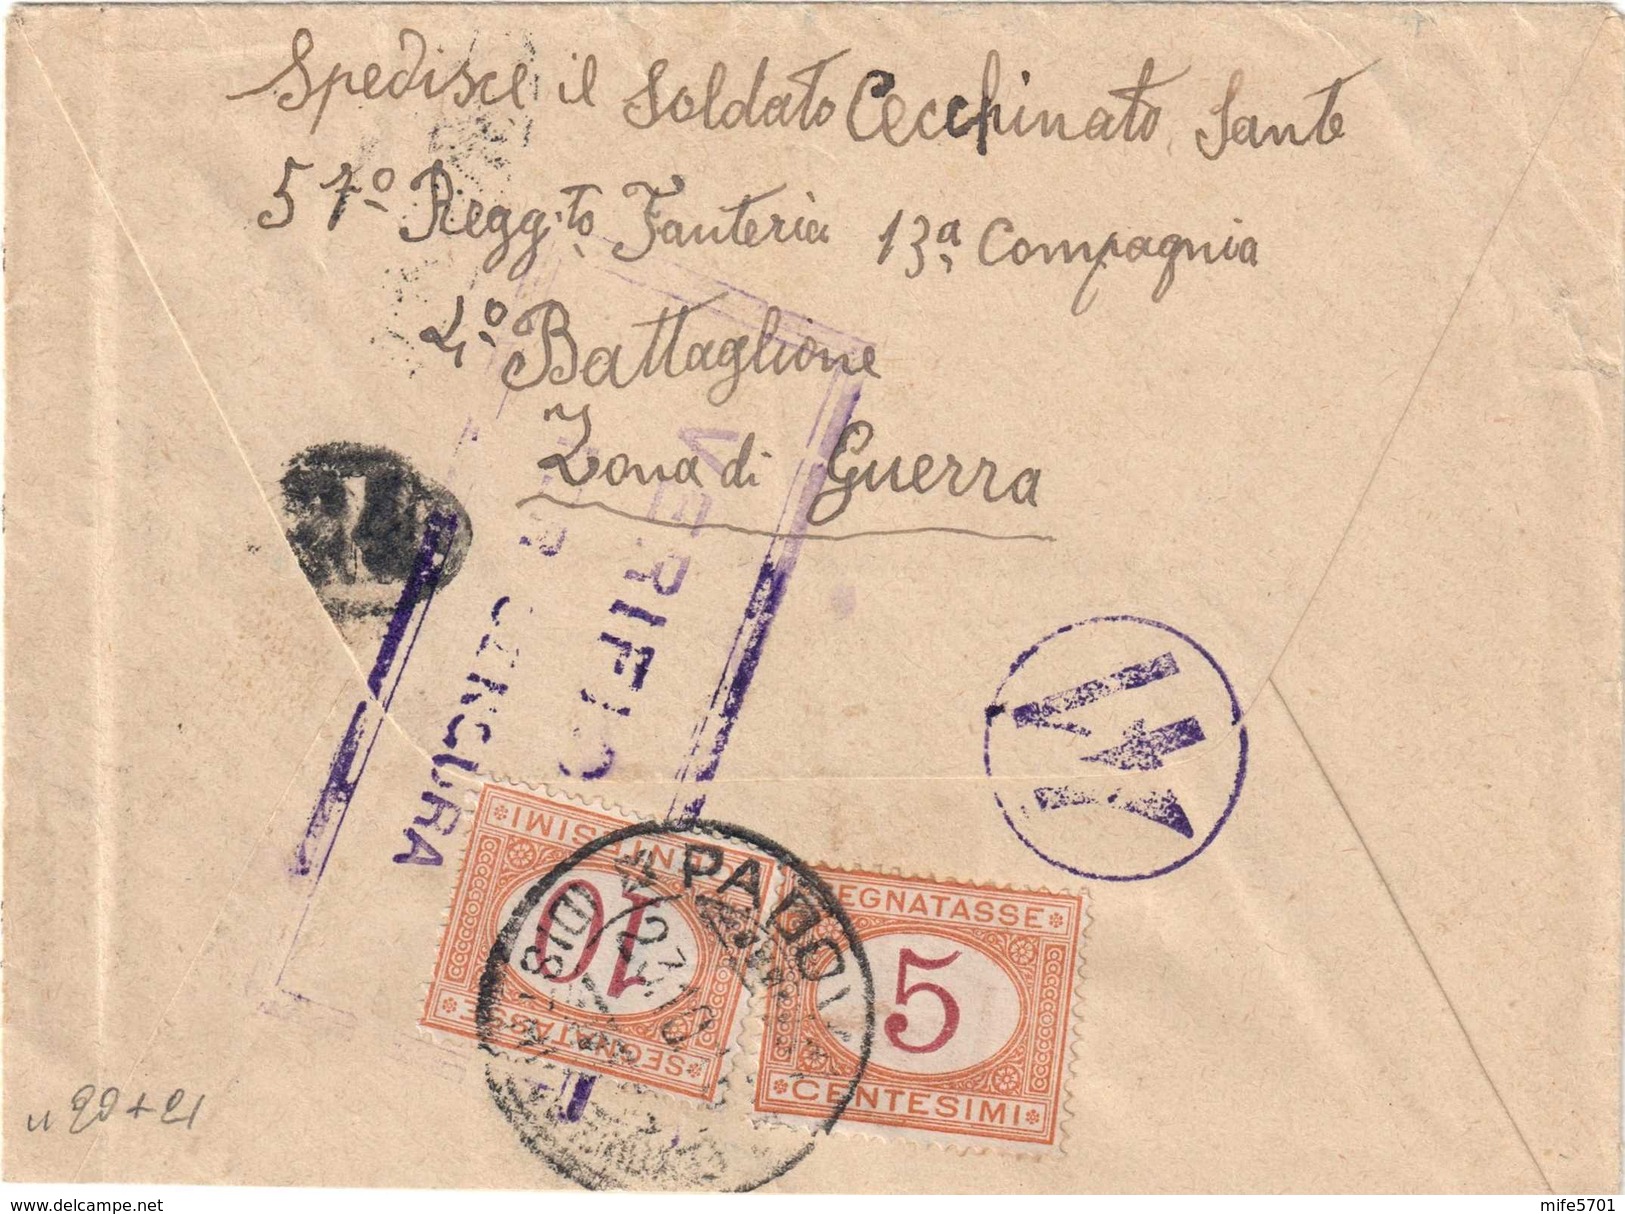 UFFICIO POSTA MILITARE 15° DIVISIONE PER PADOVA, 21/10/1915 - TASSATA AL RETRO CON C. 5 + 10 - SASSONE TAX 20 / 21 - Strafport